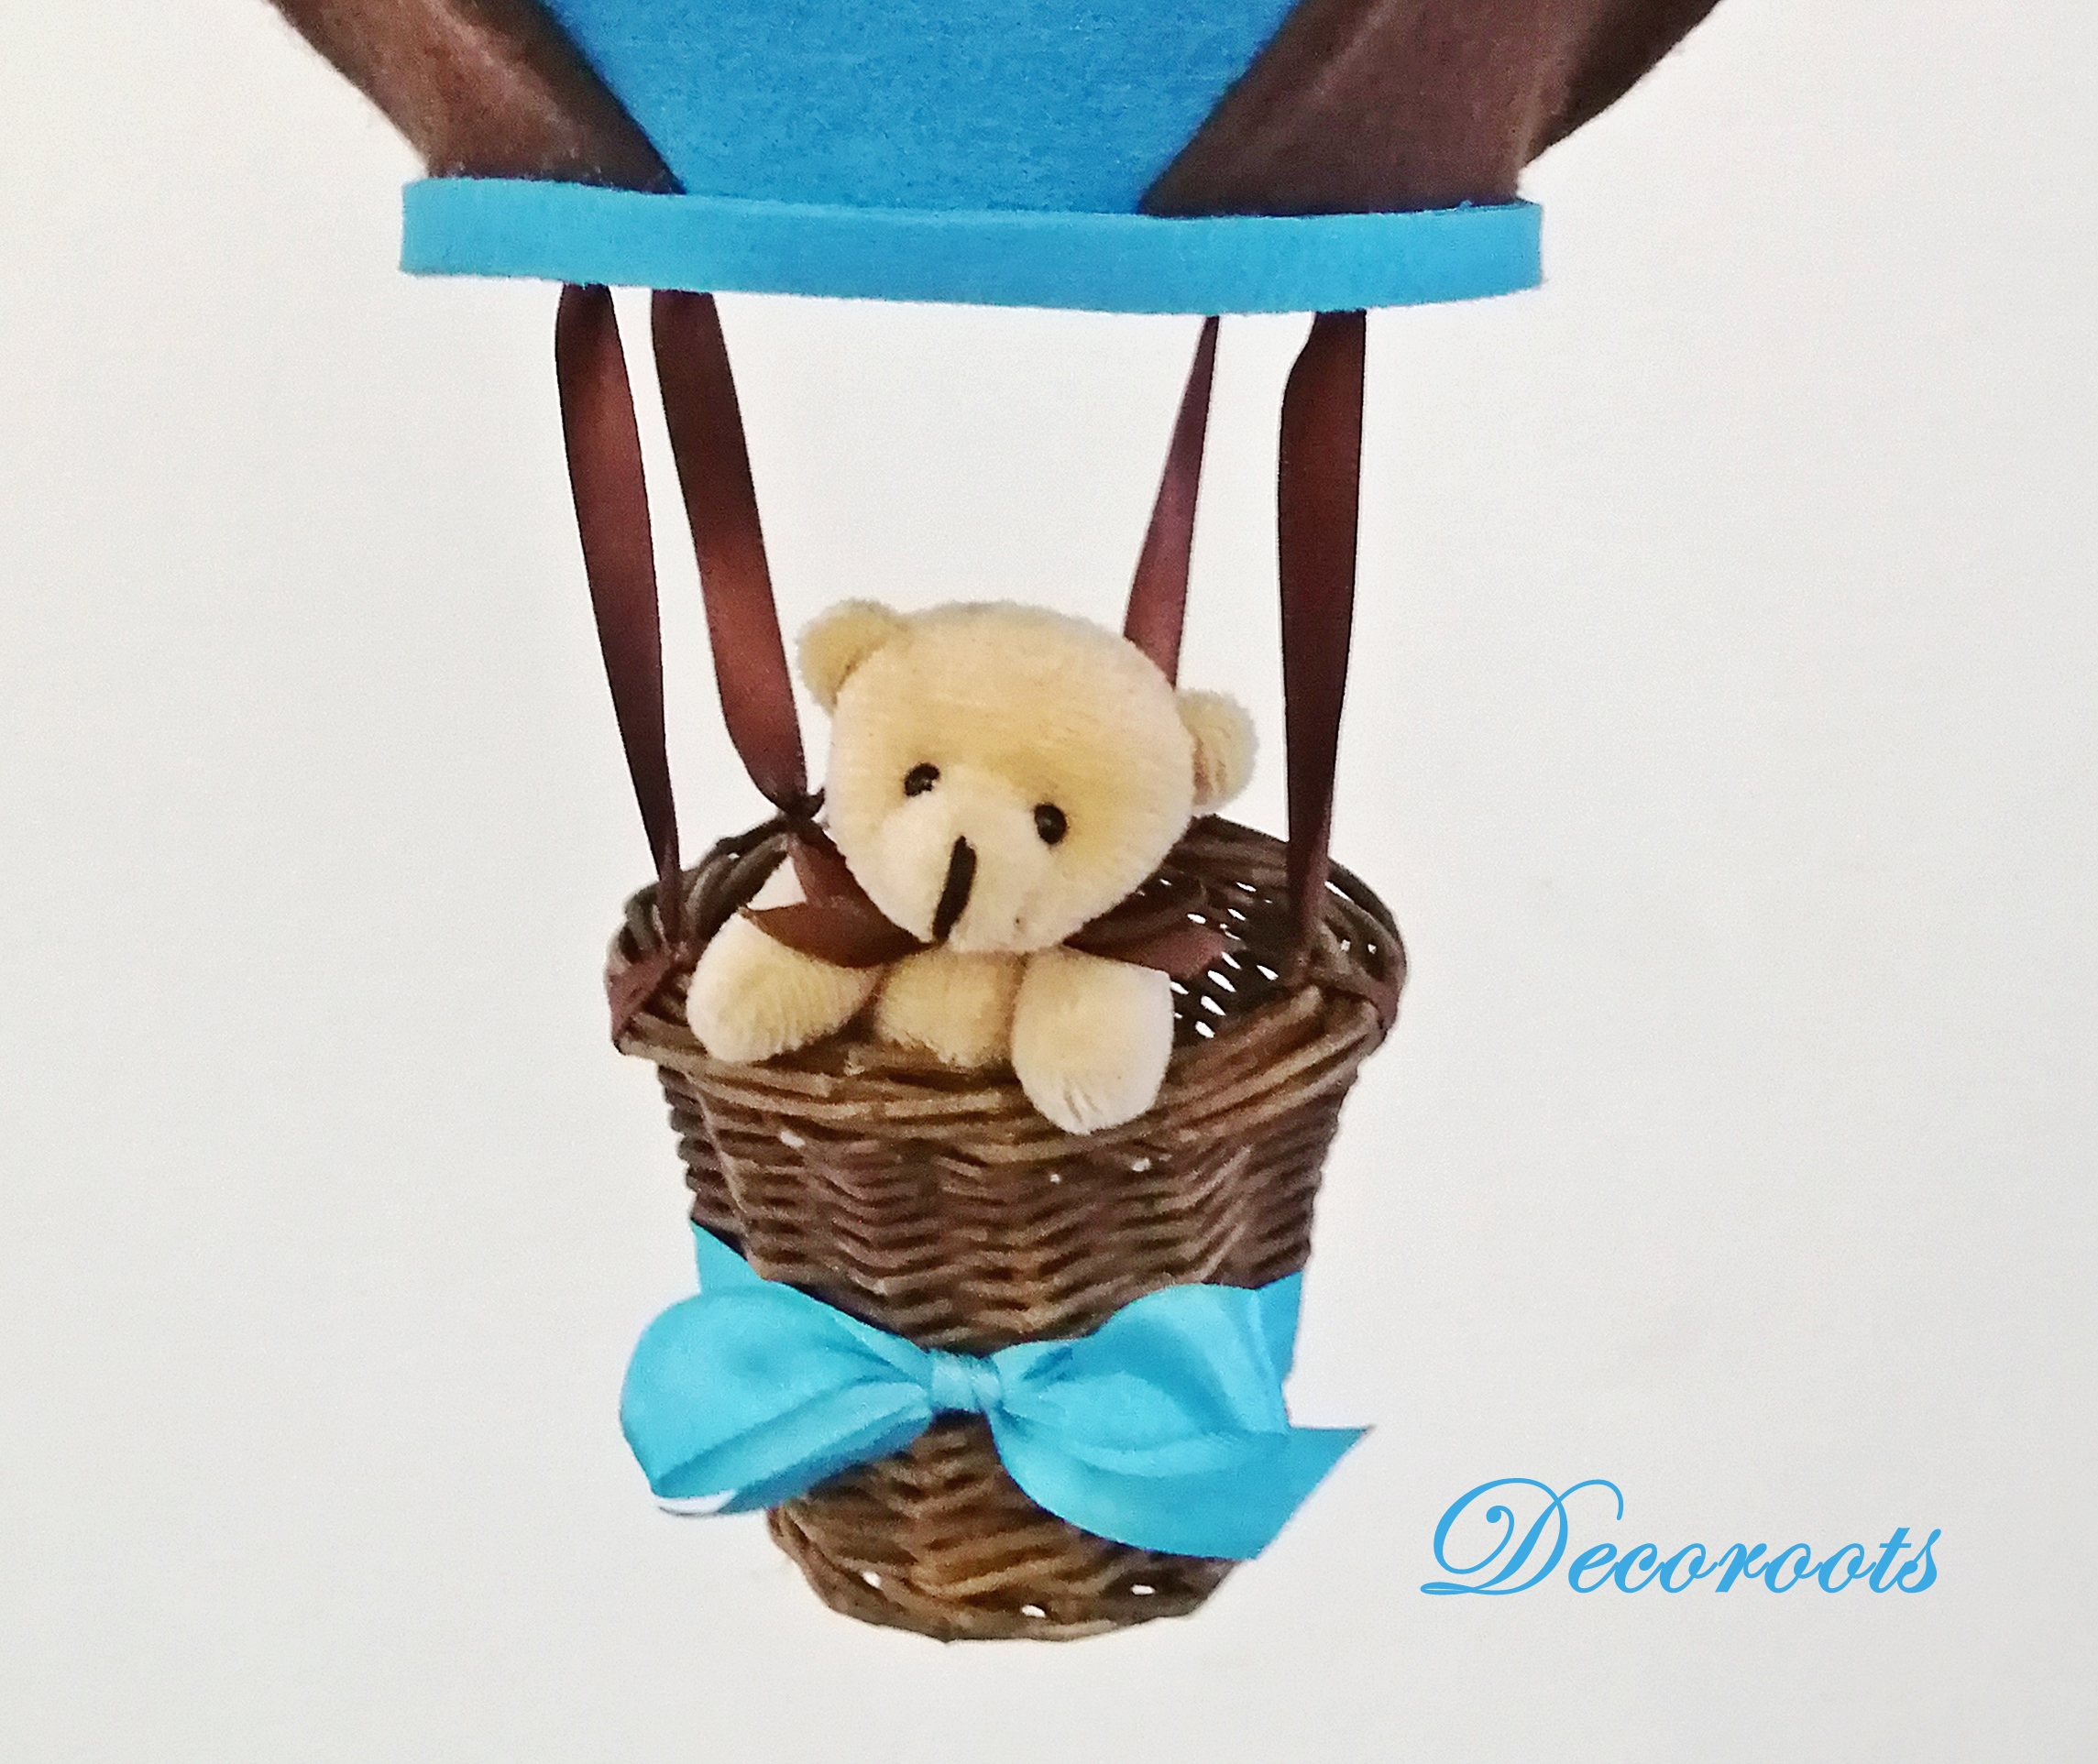 montgolfiere-decoration-enfant-bebe-suspension-mobile-marron-chocolat-turquoise-garcon